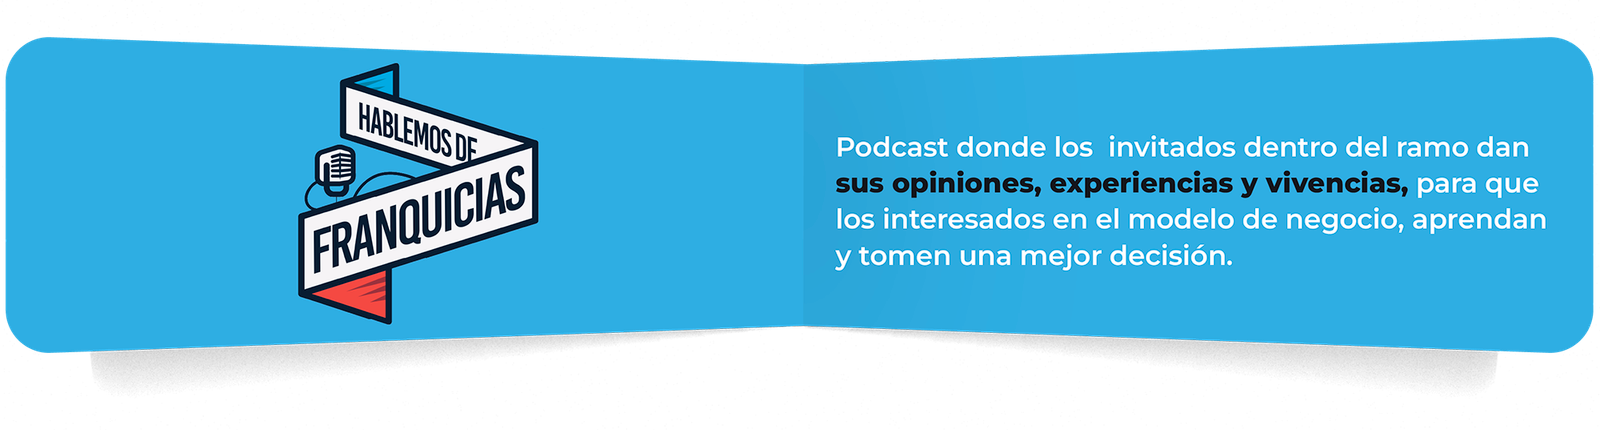 Podcast donde los invitados dentro del ramo dan sus opiniones, experiencias y vivencias, para que los interesados en el modelo de negocio, aprendan y tomen una mejor decisión.